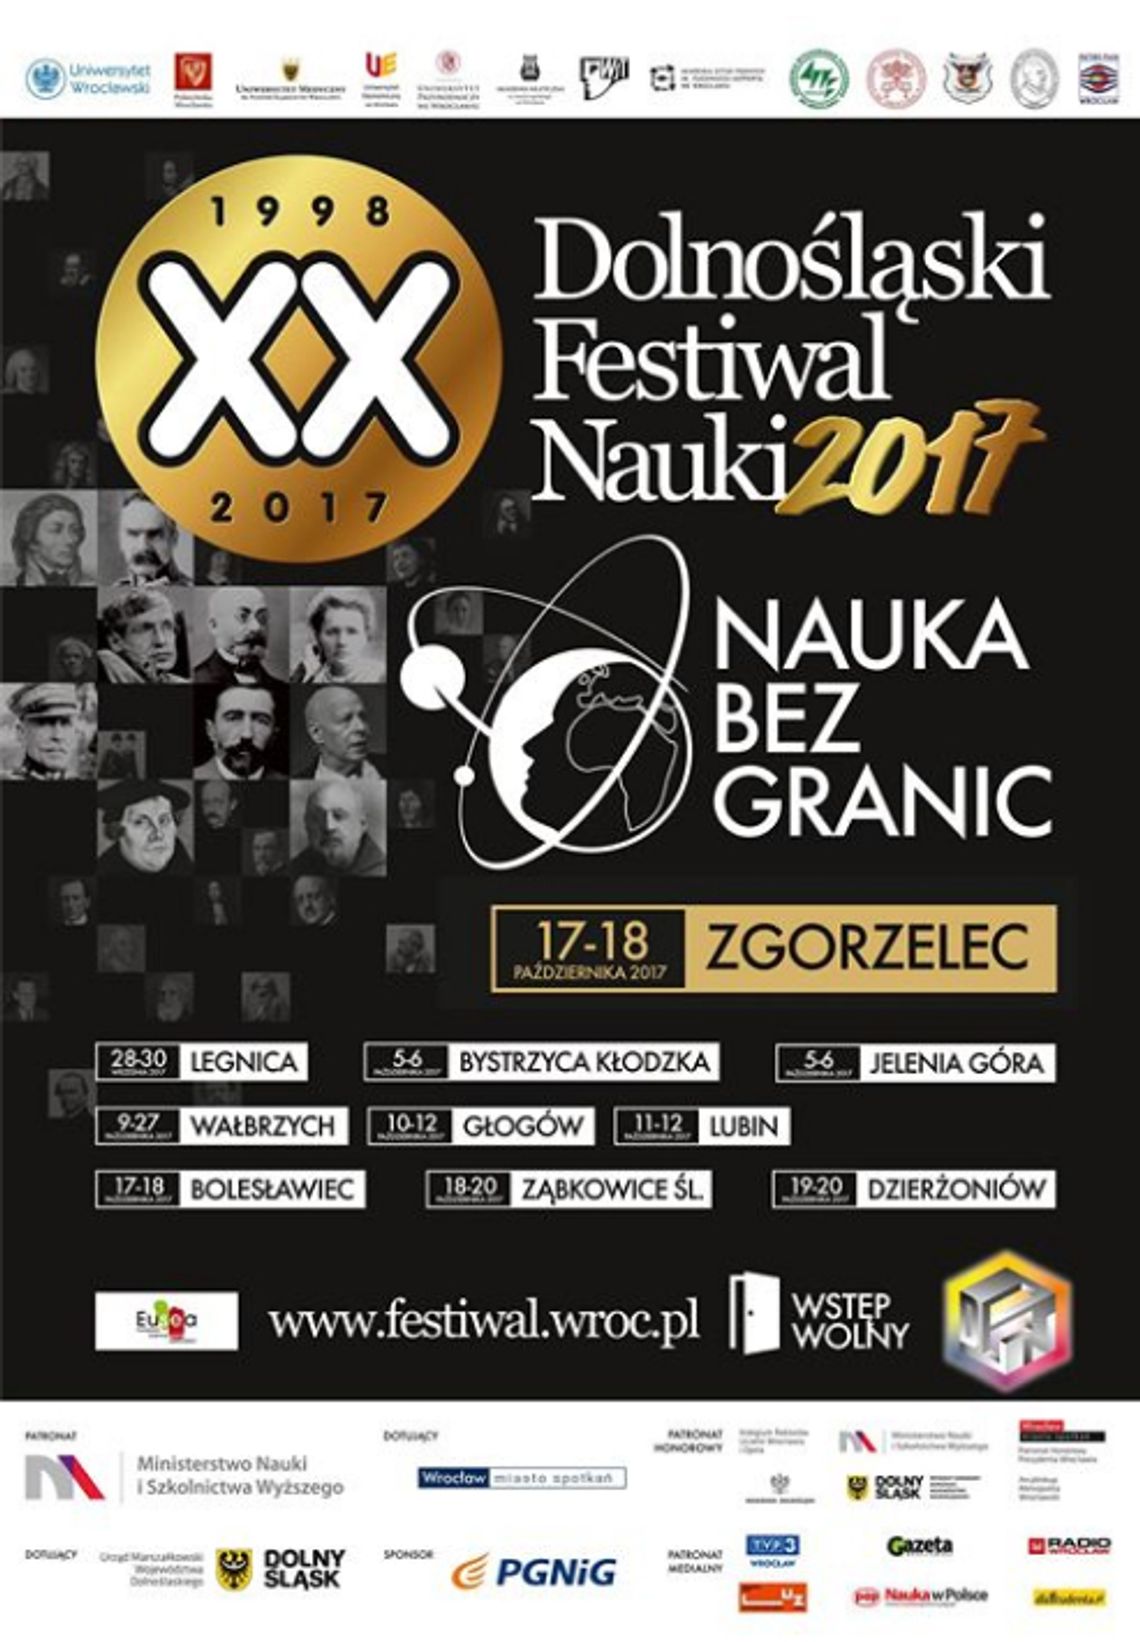 Dolnośląski Festiwal Nauki 2017